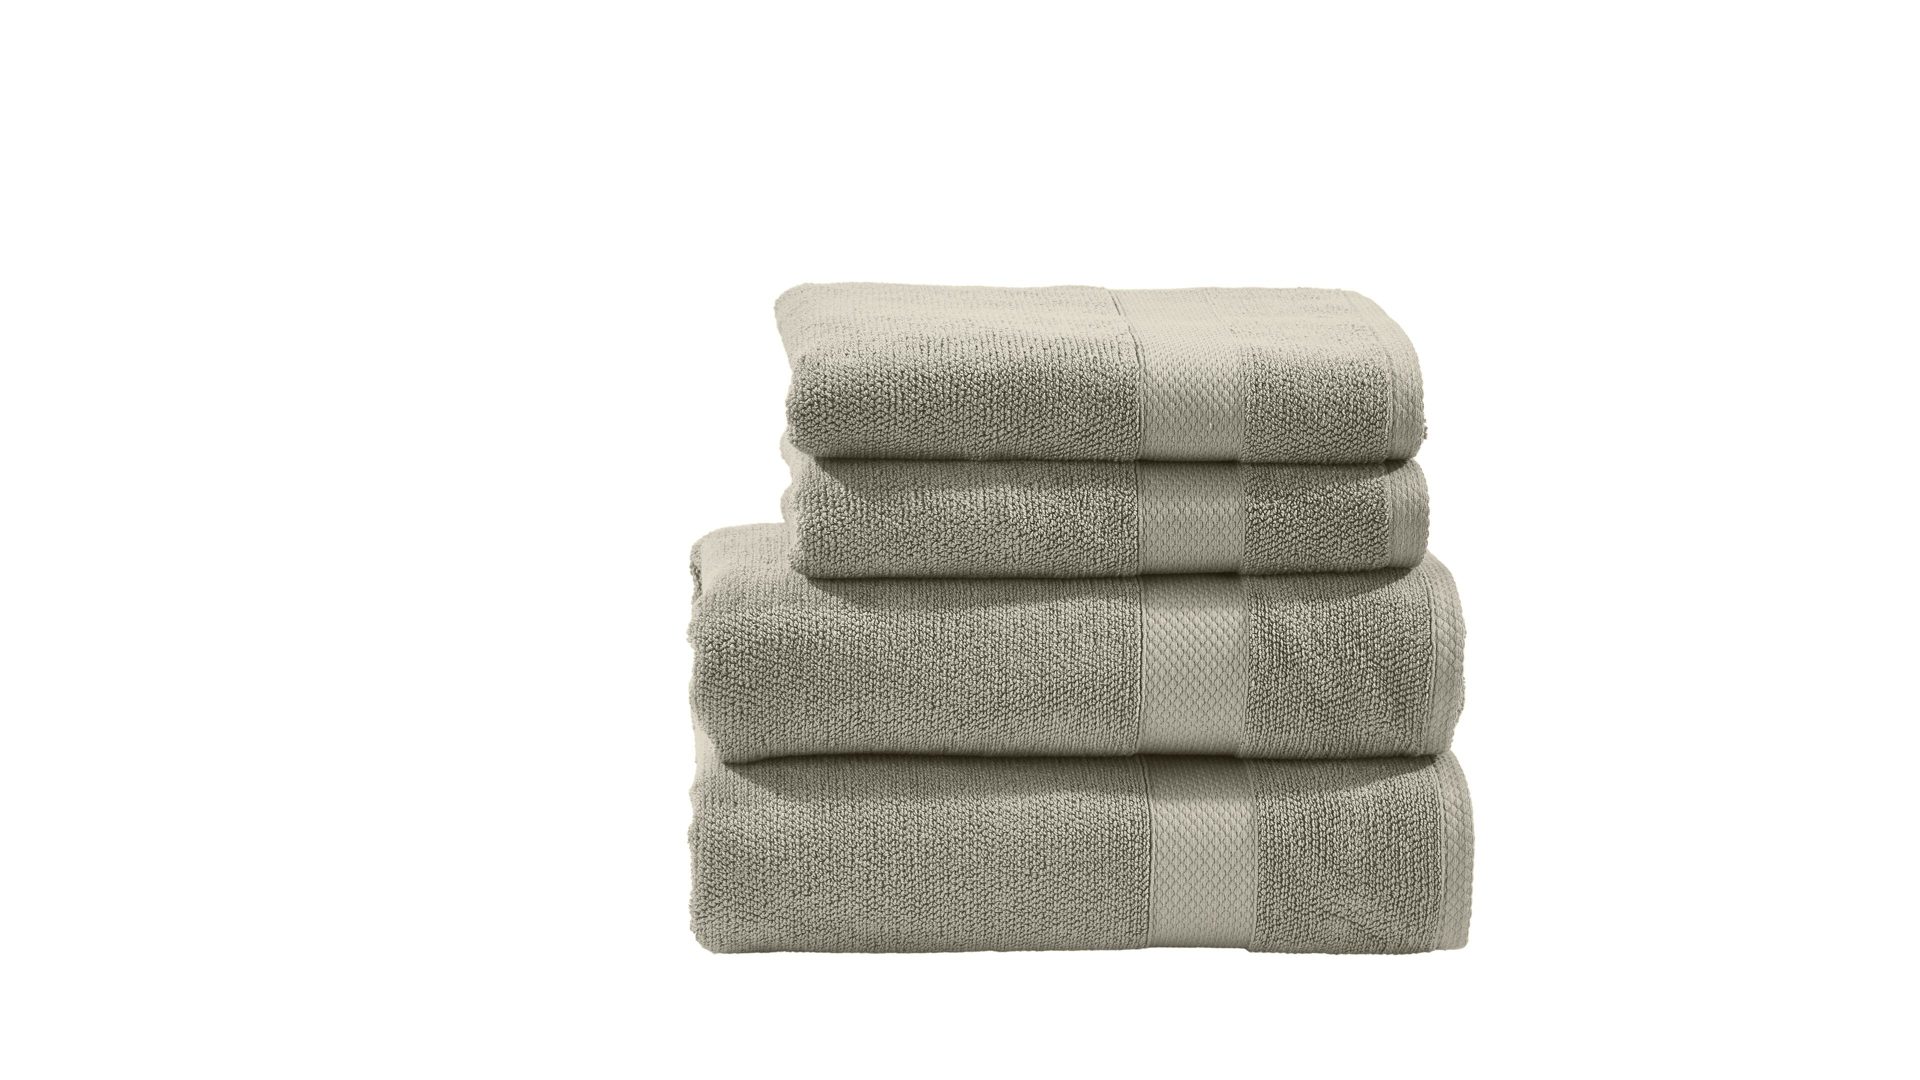 Handtuch-Set Done® be different aus Stoff in Beige DONE® Handtuch-Set Deluxe - Heimtextilien taupefarbene Baumwolle – vierteilig